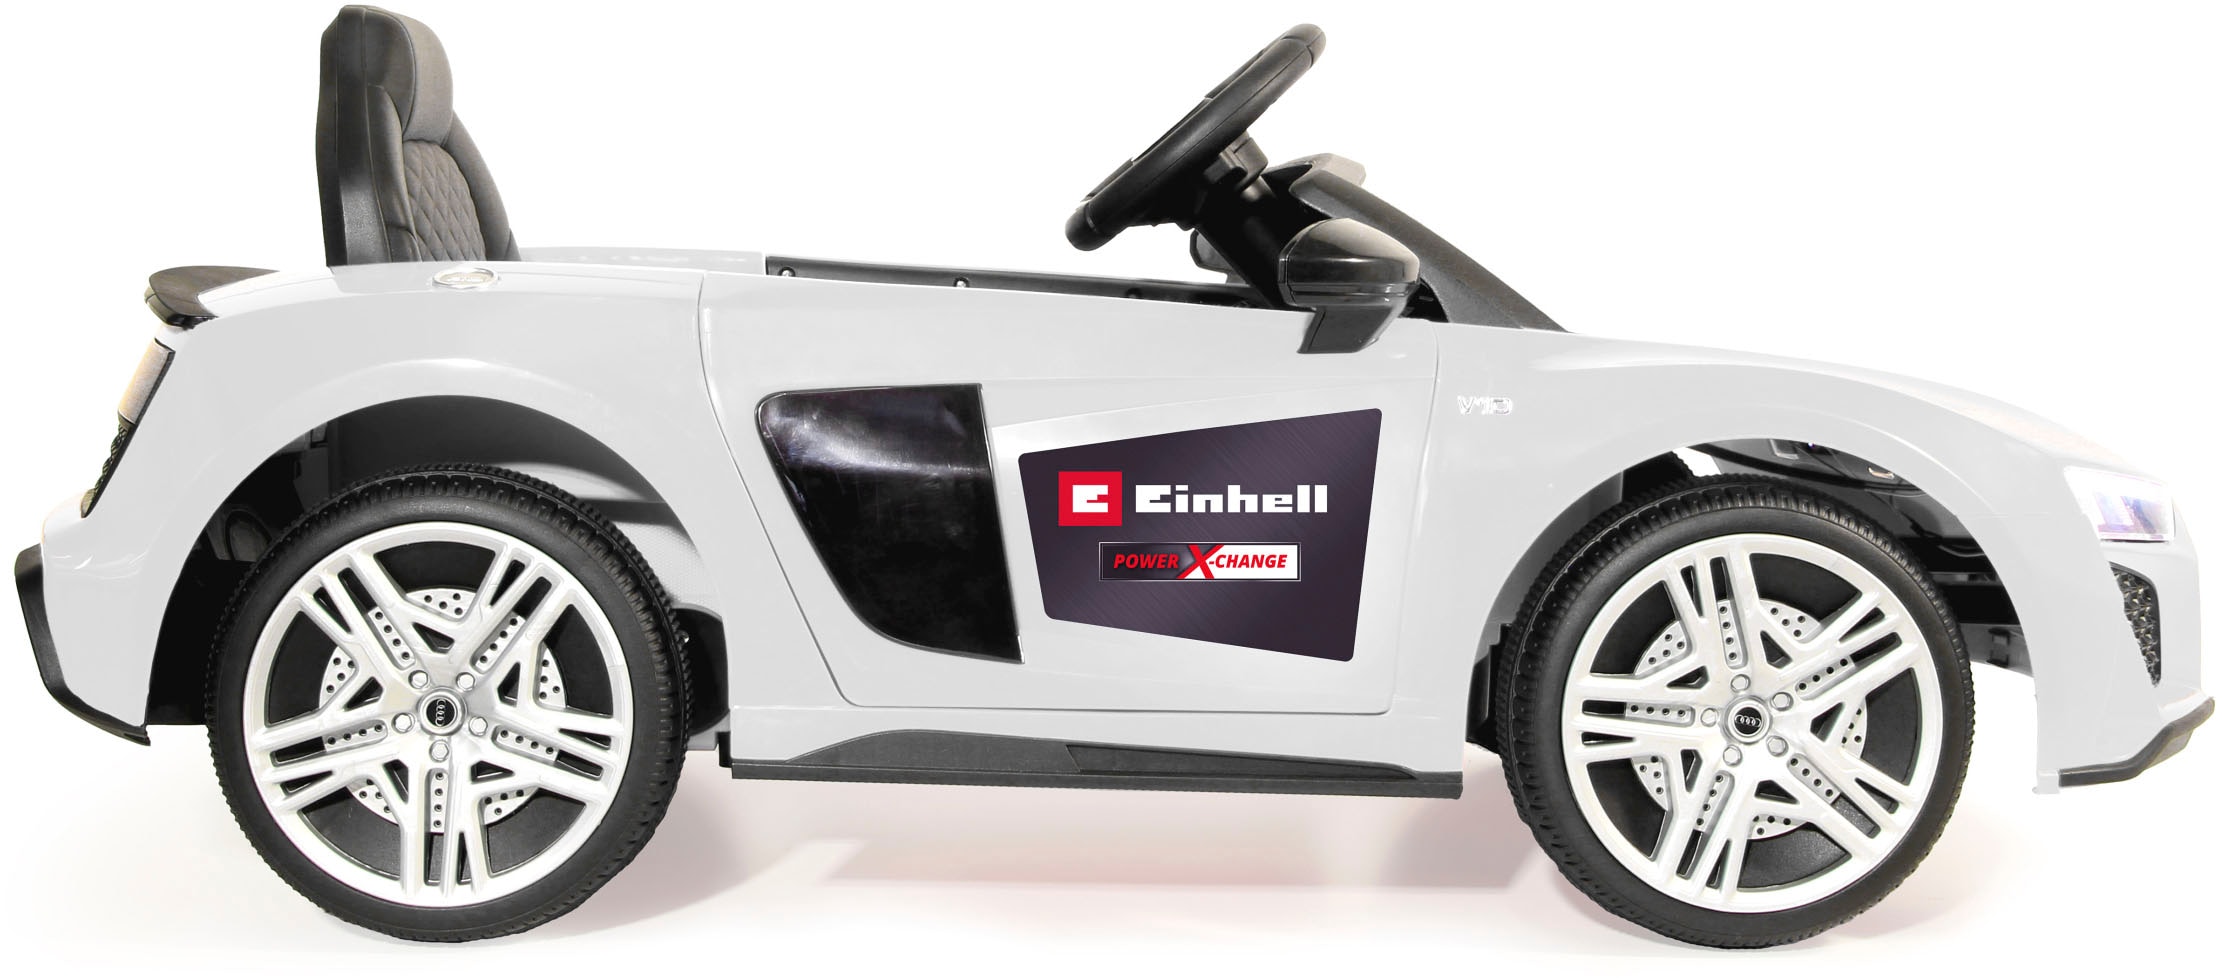 Jamara Elektro-Kinderauto »Ride-on Audi R8 Spyder weiß«, ab 3 Jahren, bis 25 kg, inkl. 18V/4,0Ah Einhell Power X-Change Starter Set